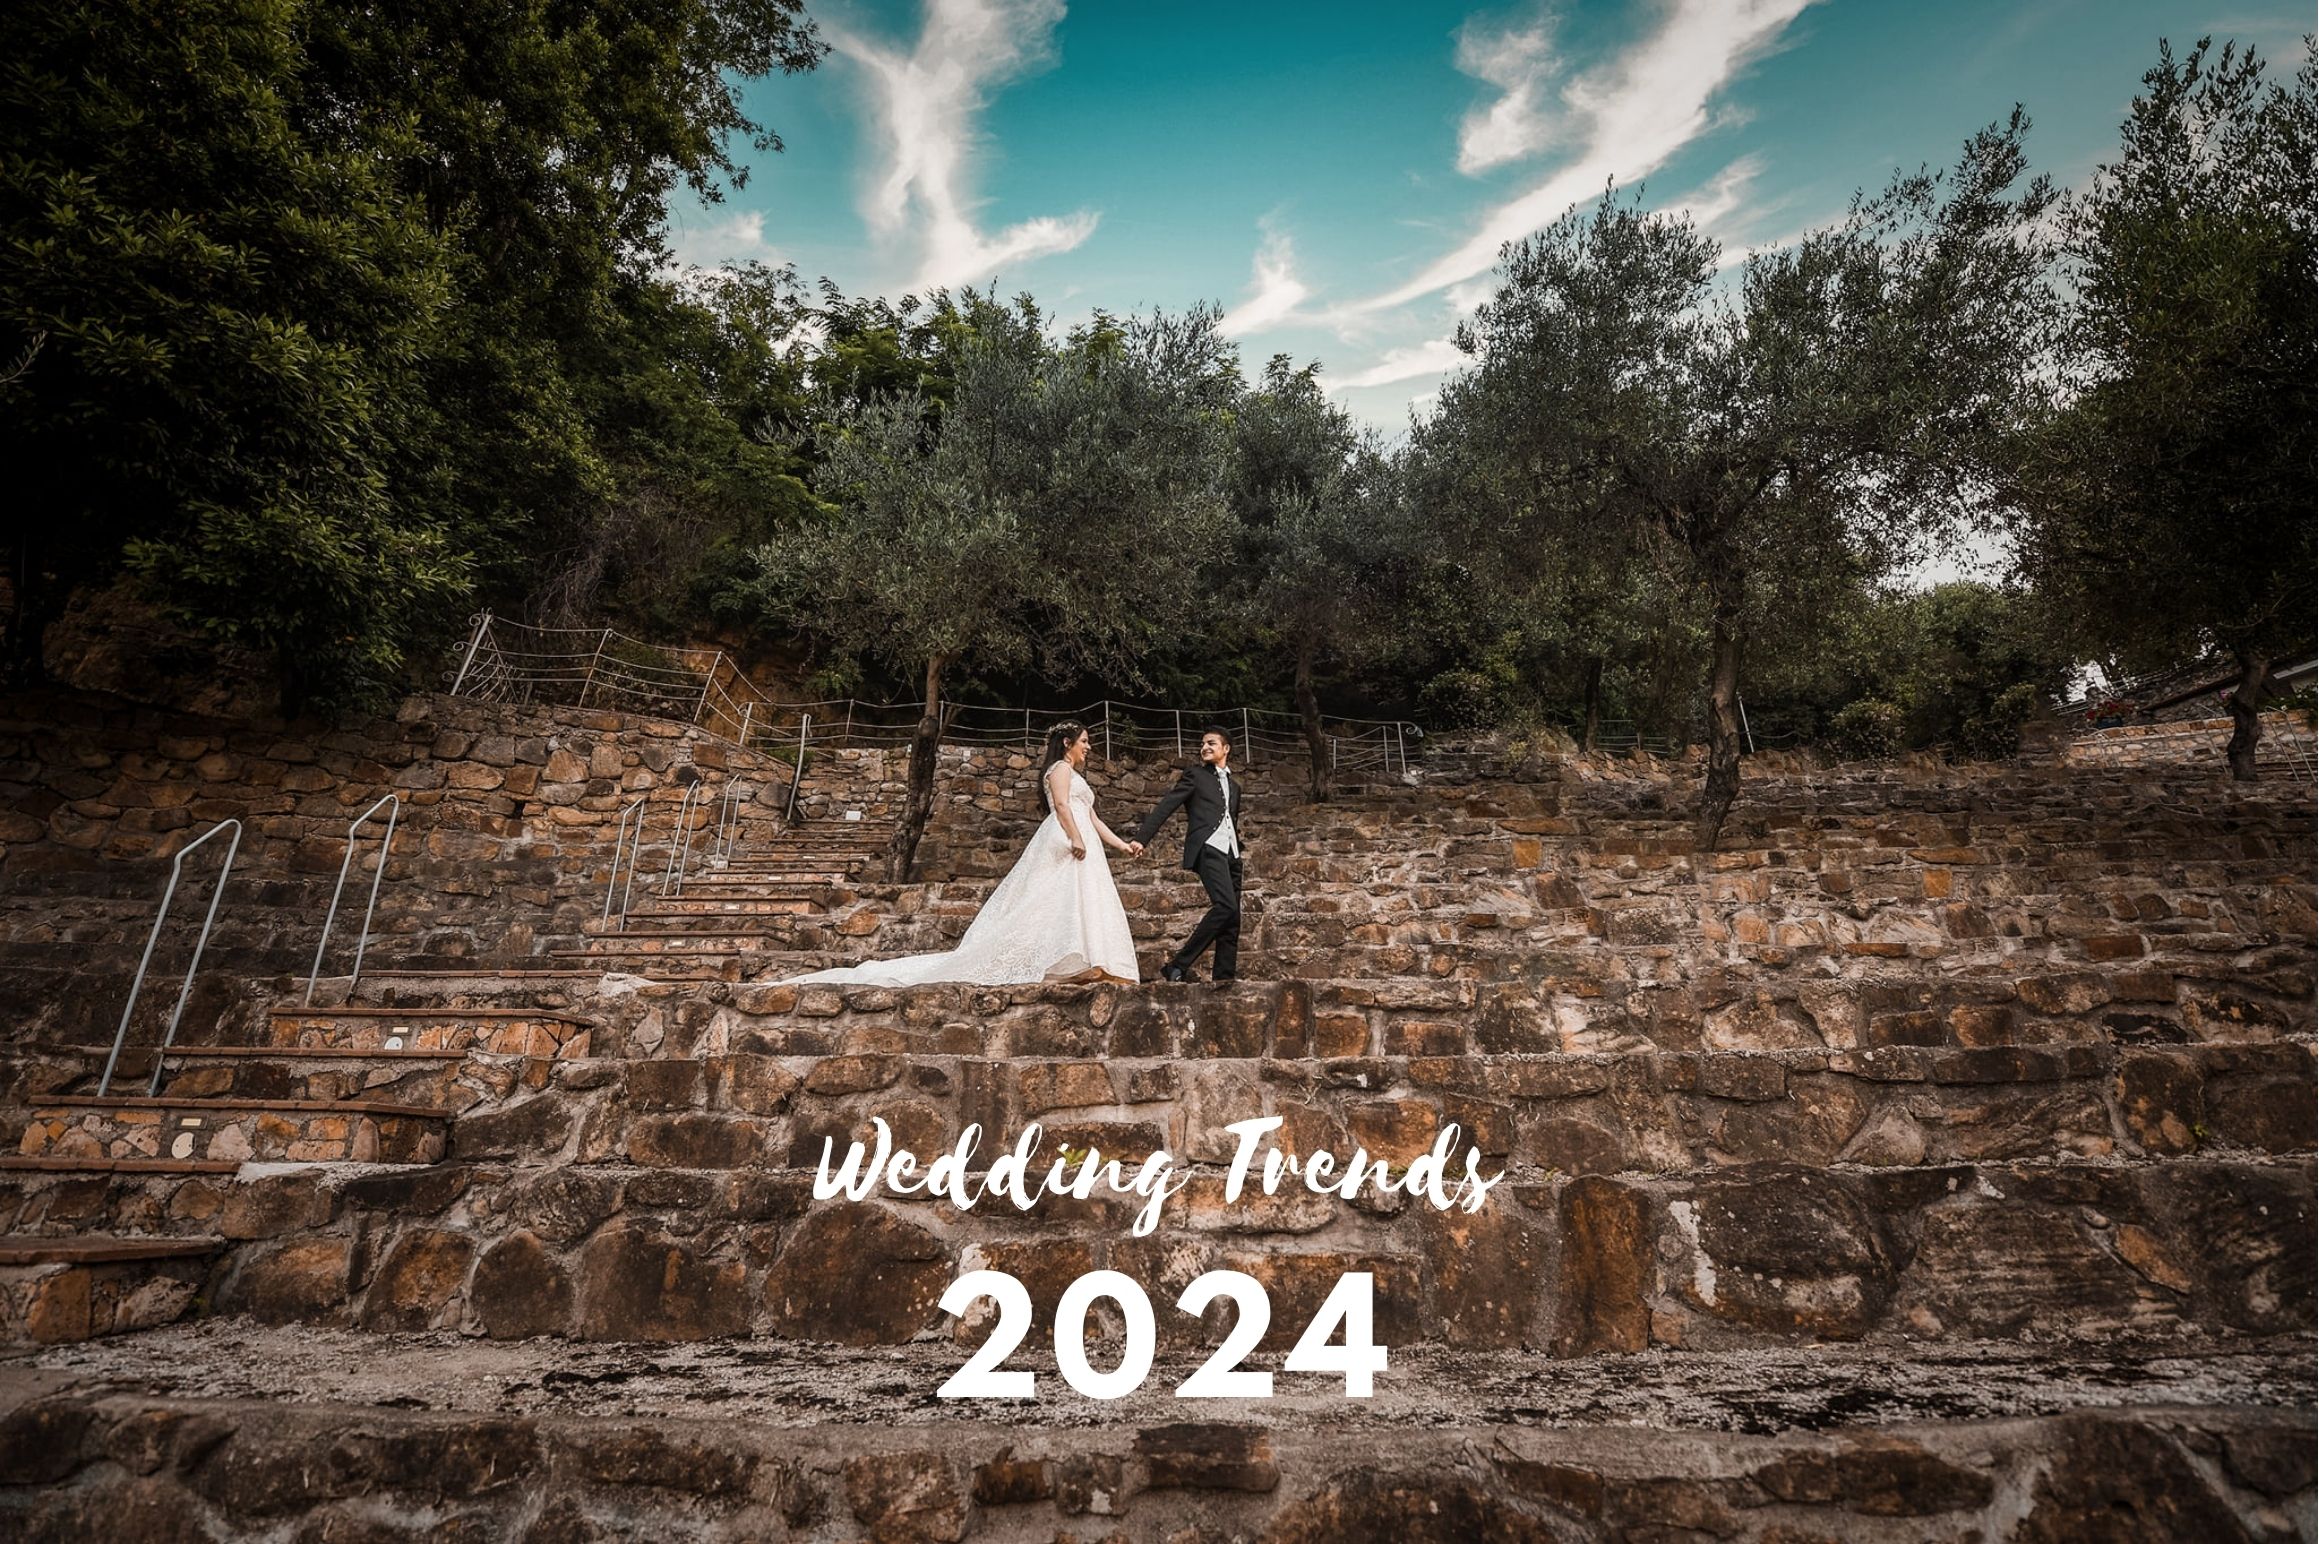 Wedding trends 2024